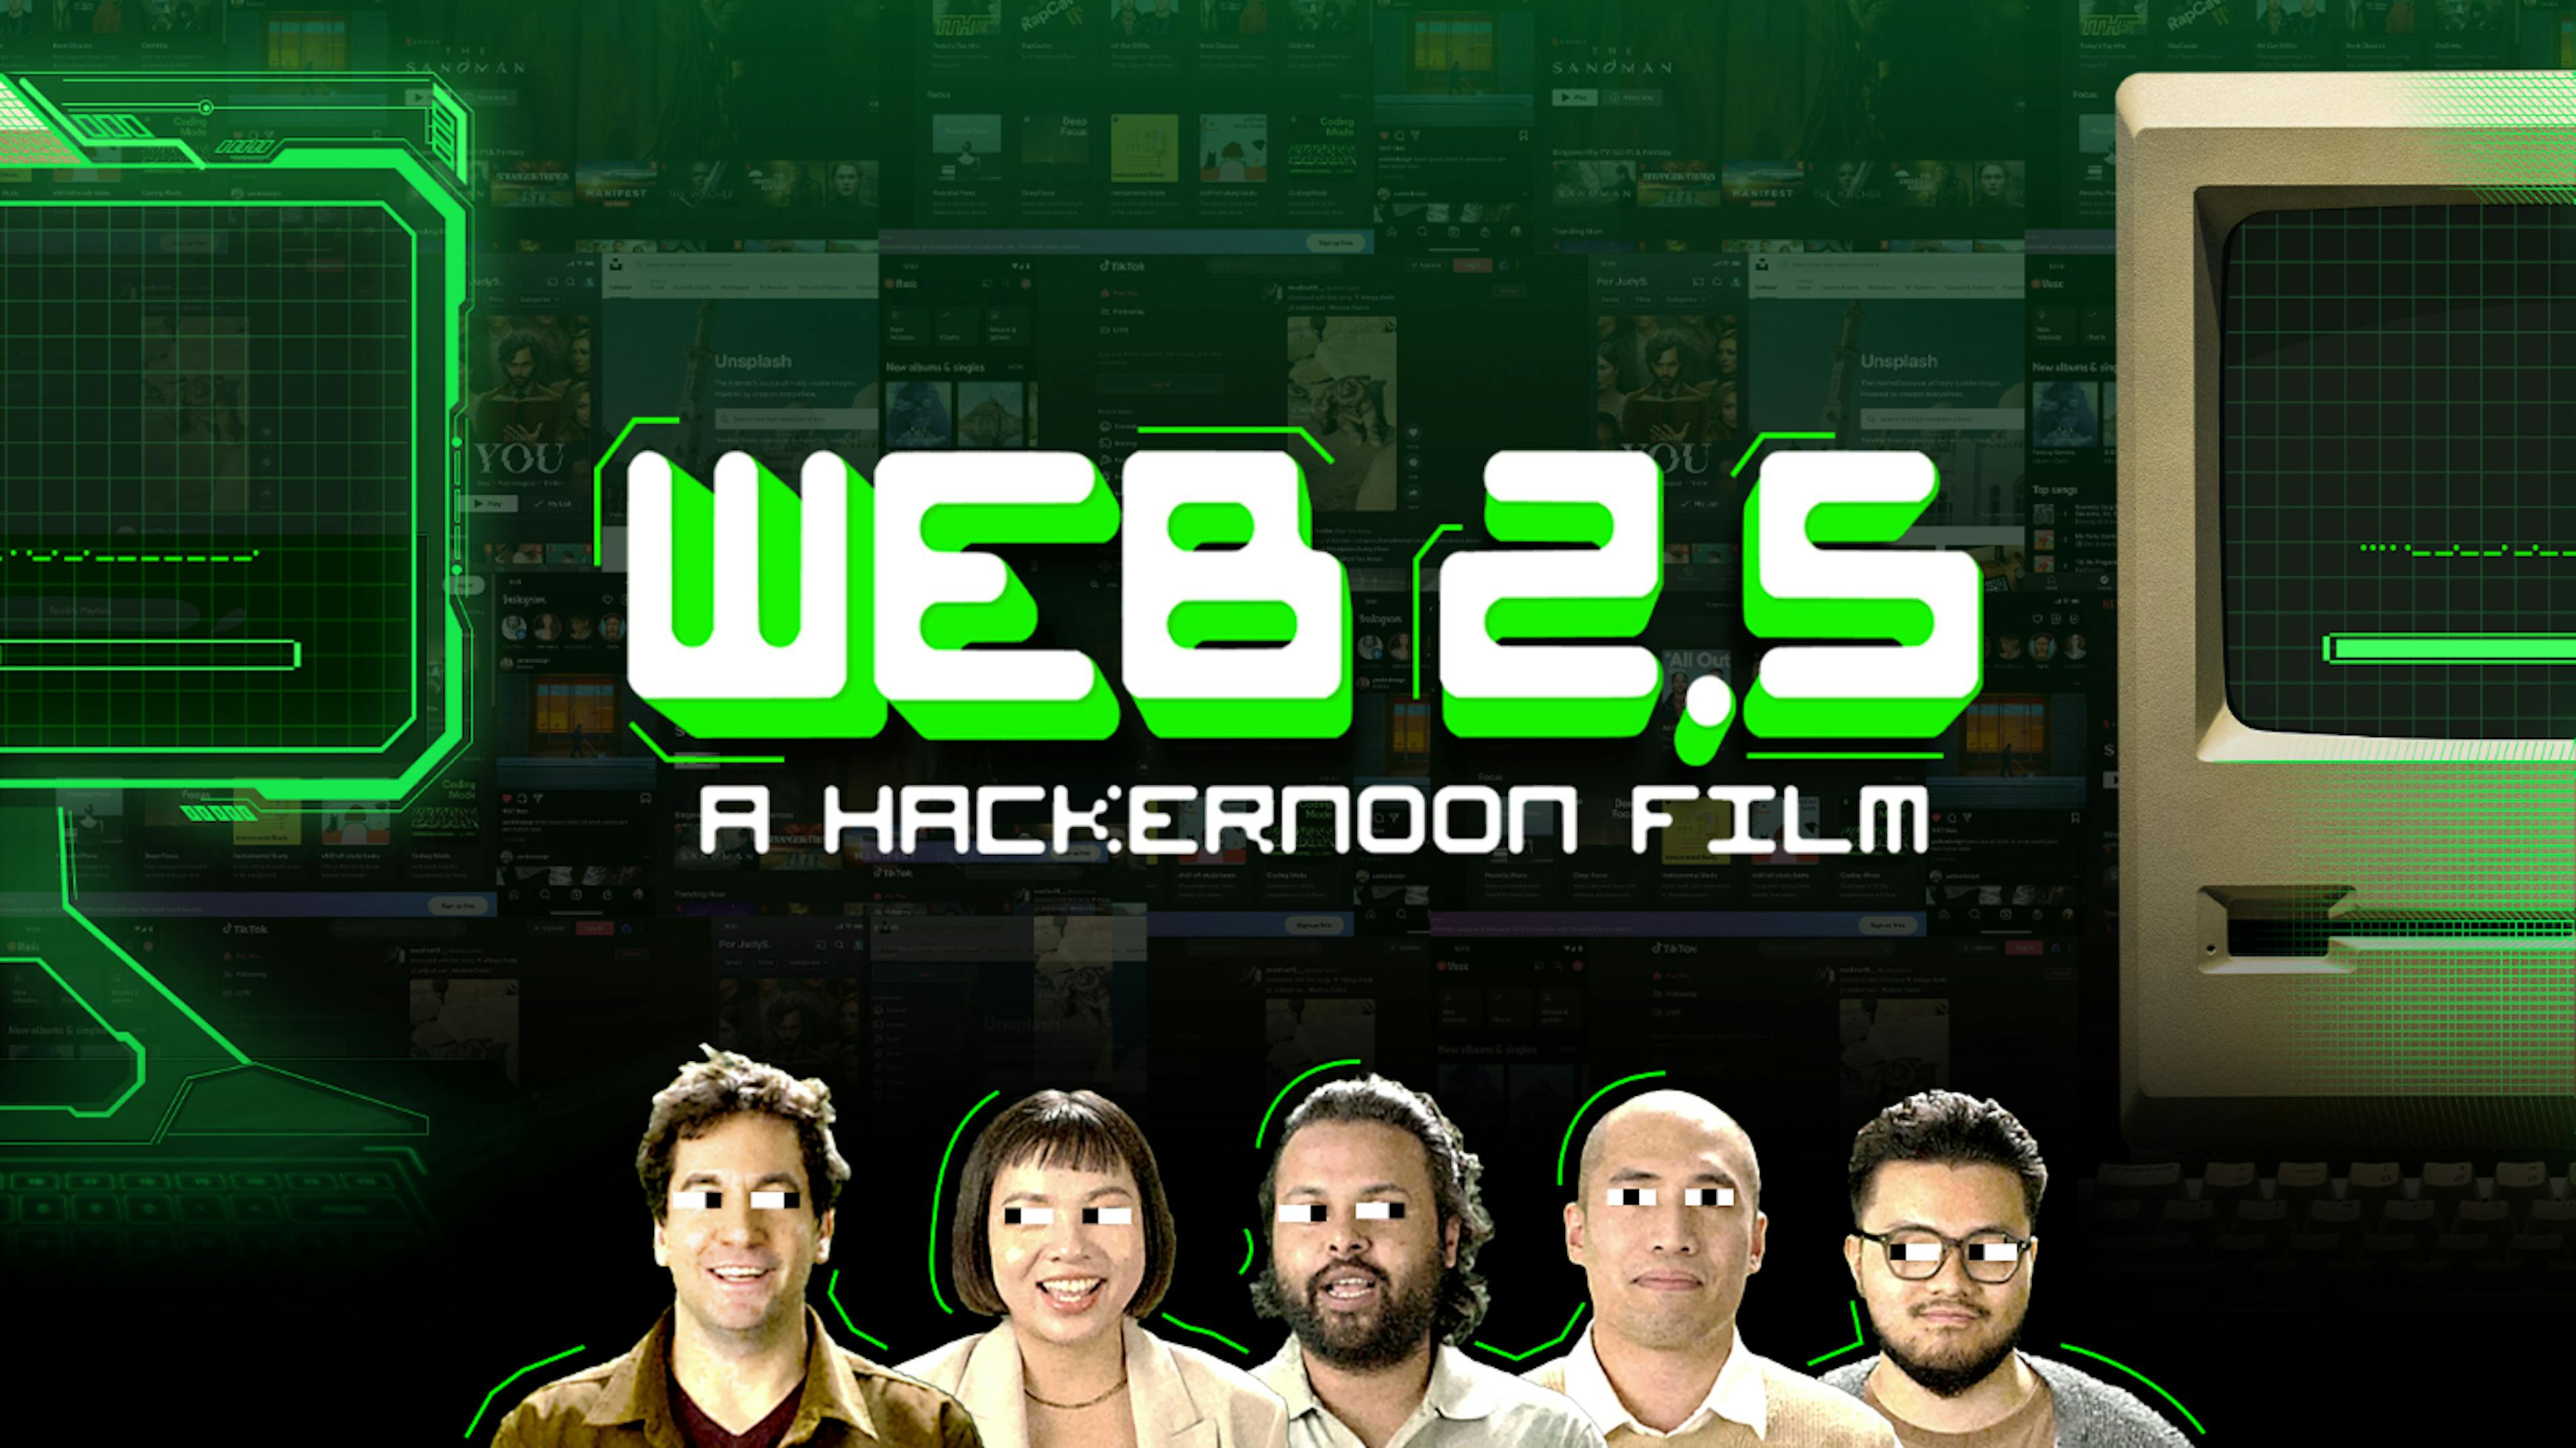 featured image - 天哪 🎅 HackerNoon 的 Web 2.5 纪录片已经出炉了！ 😮